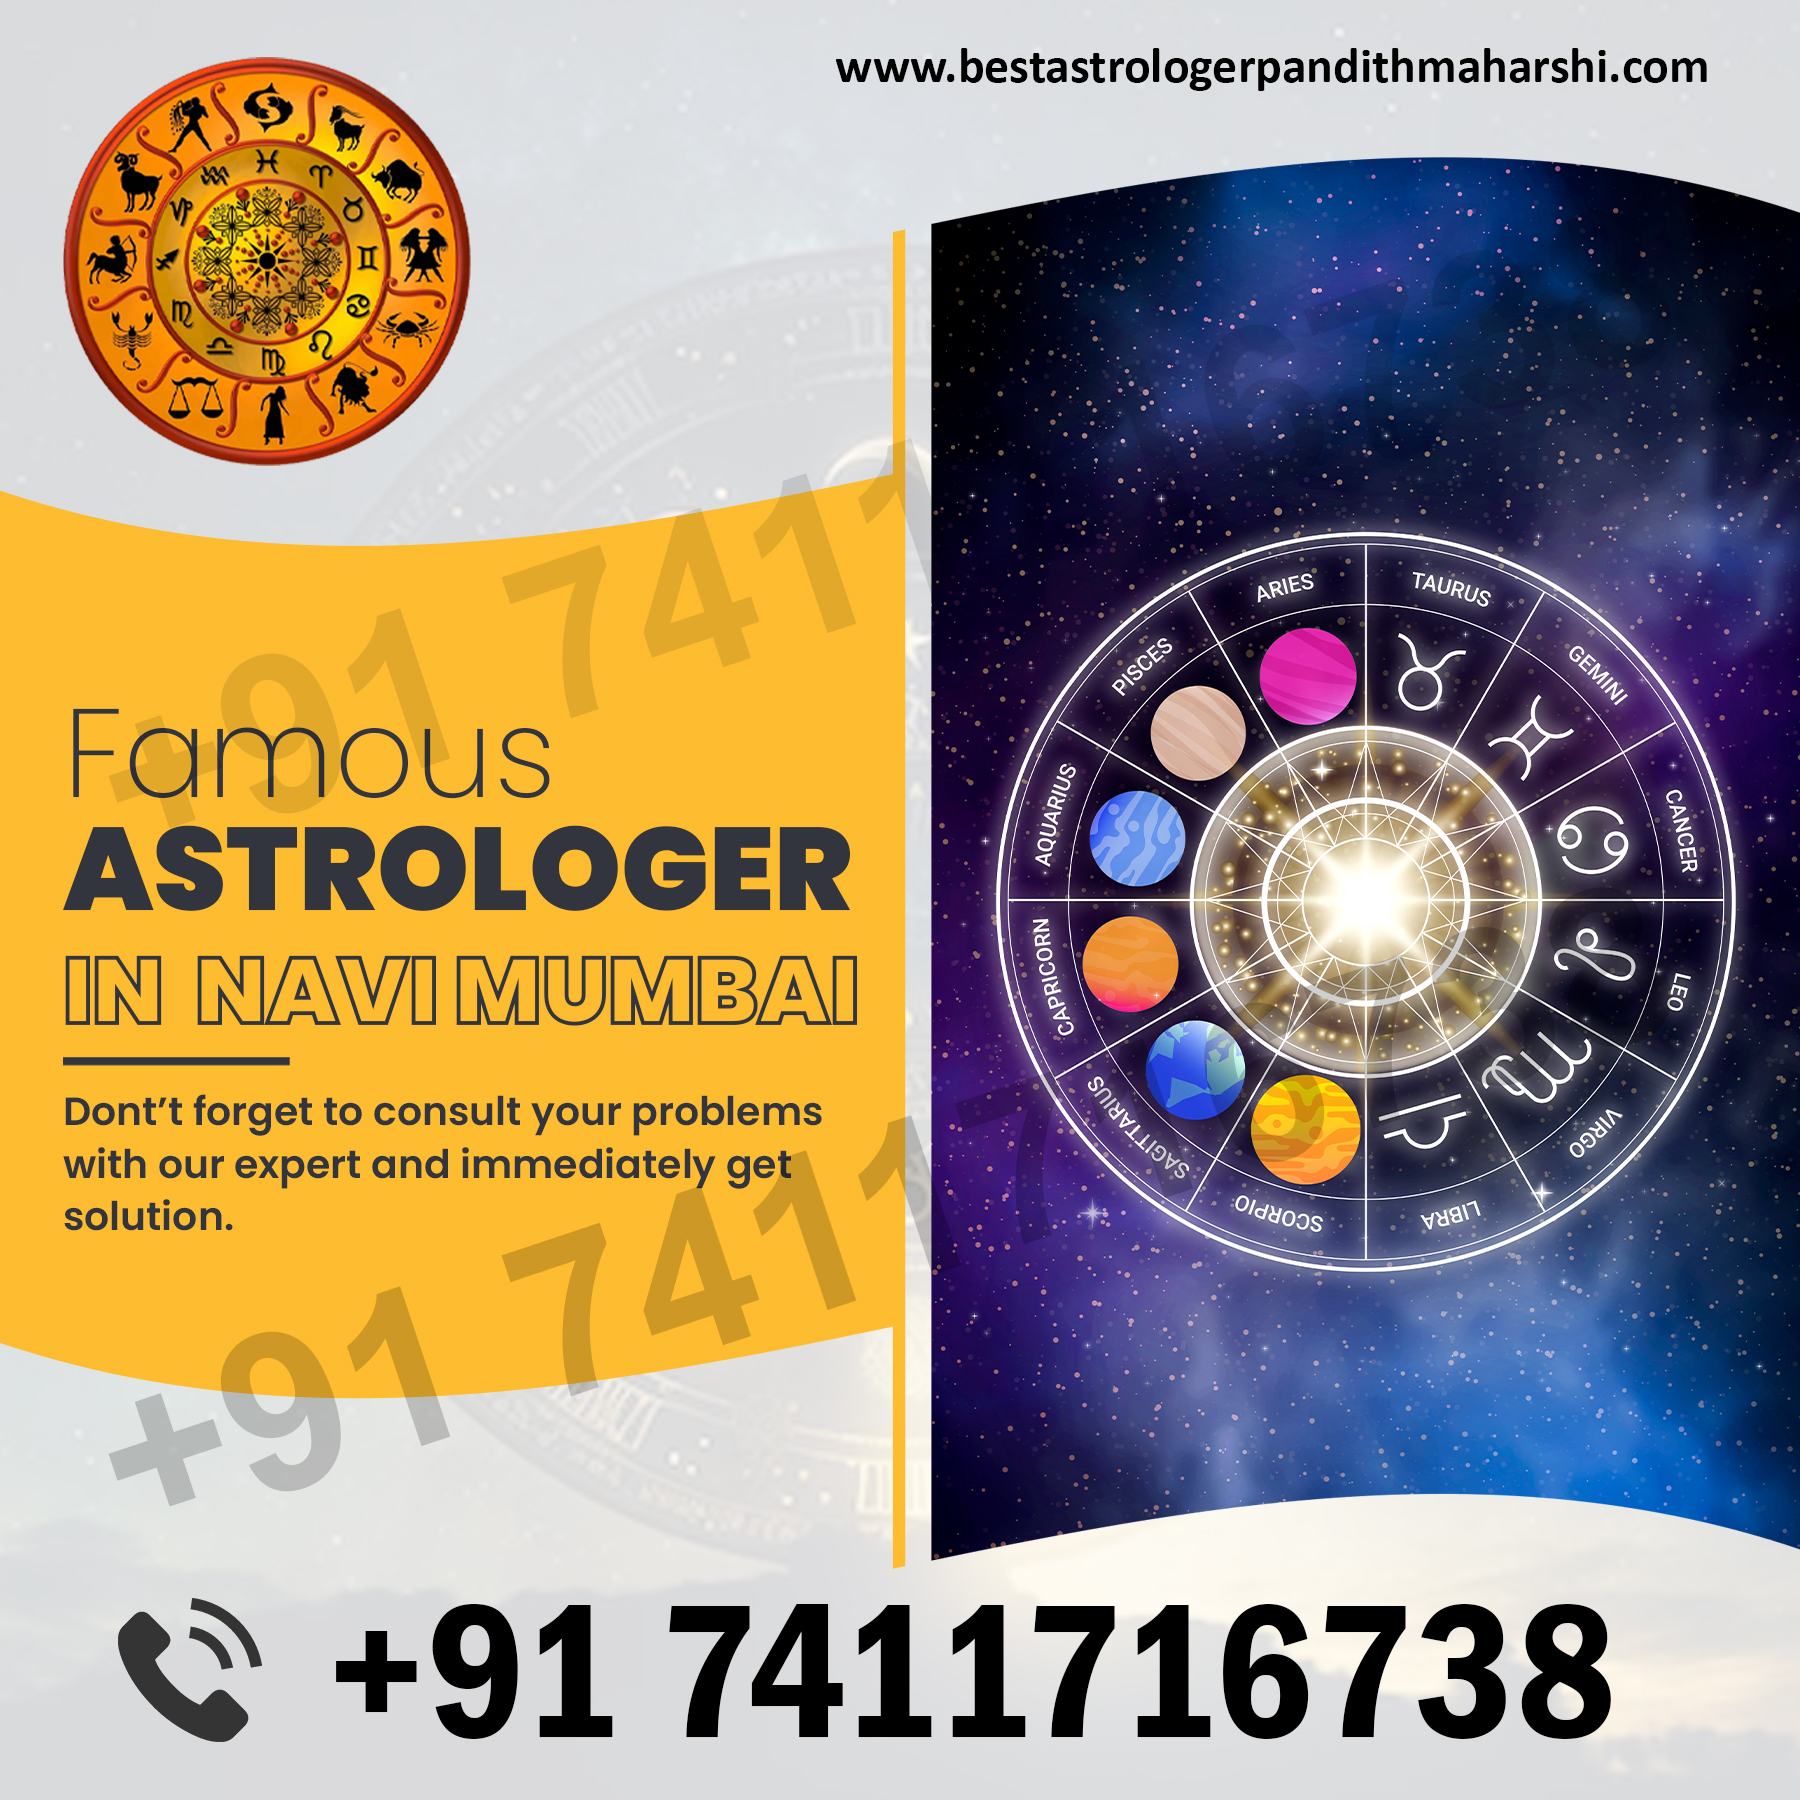 Famous Astrologer in Navi Mumbai